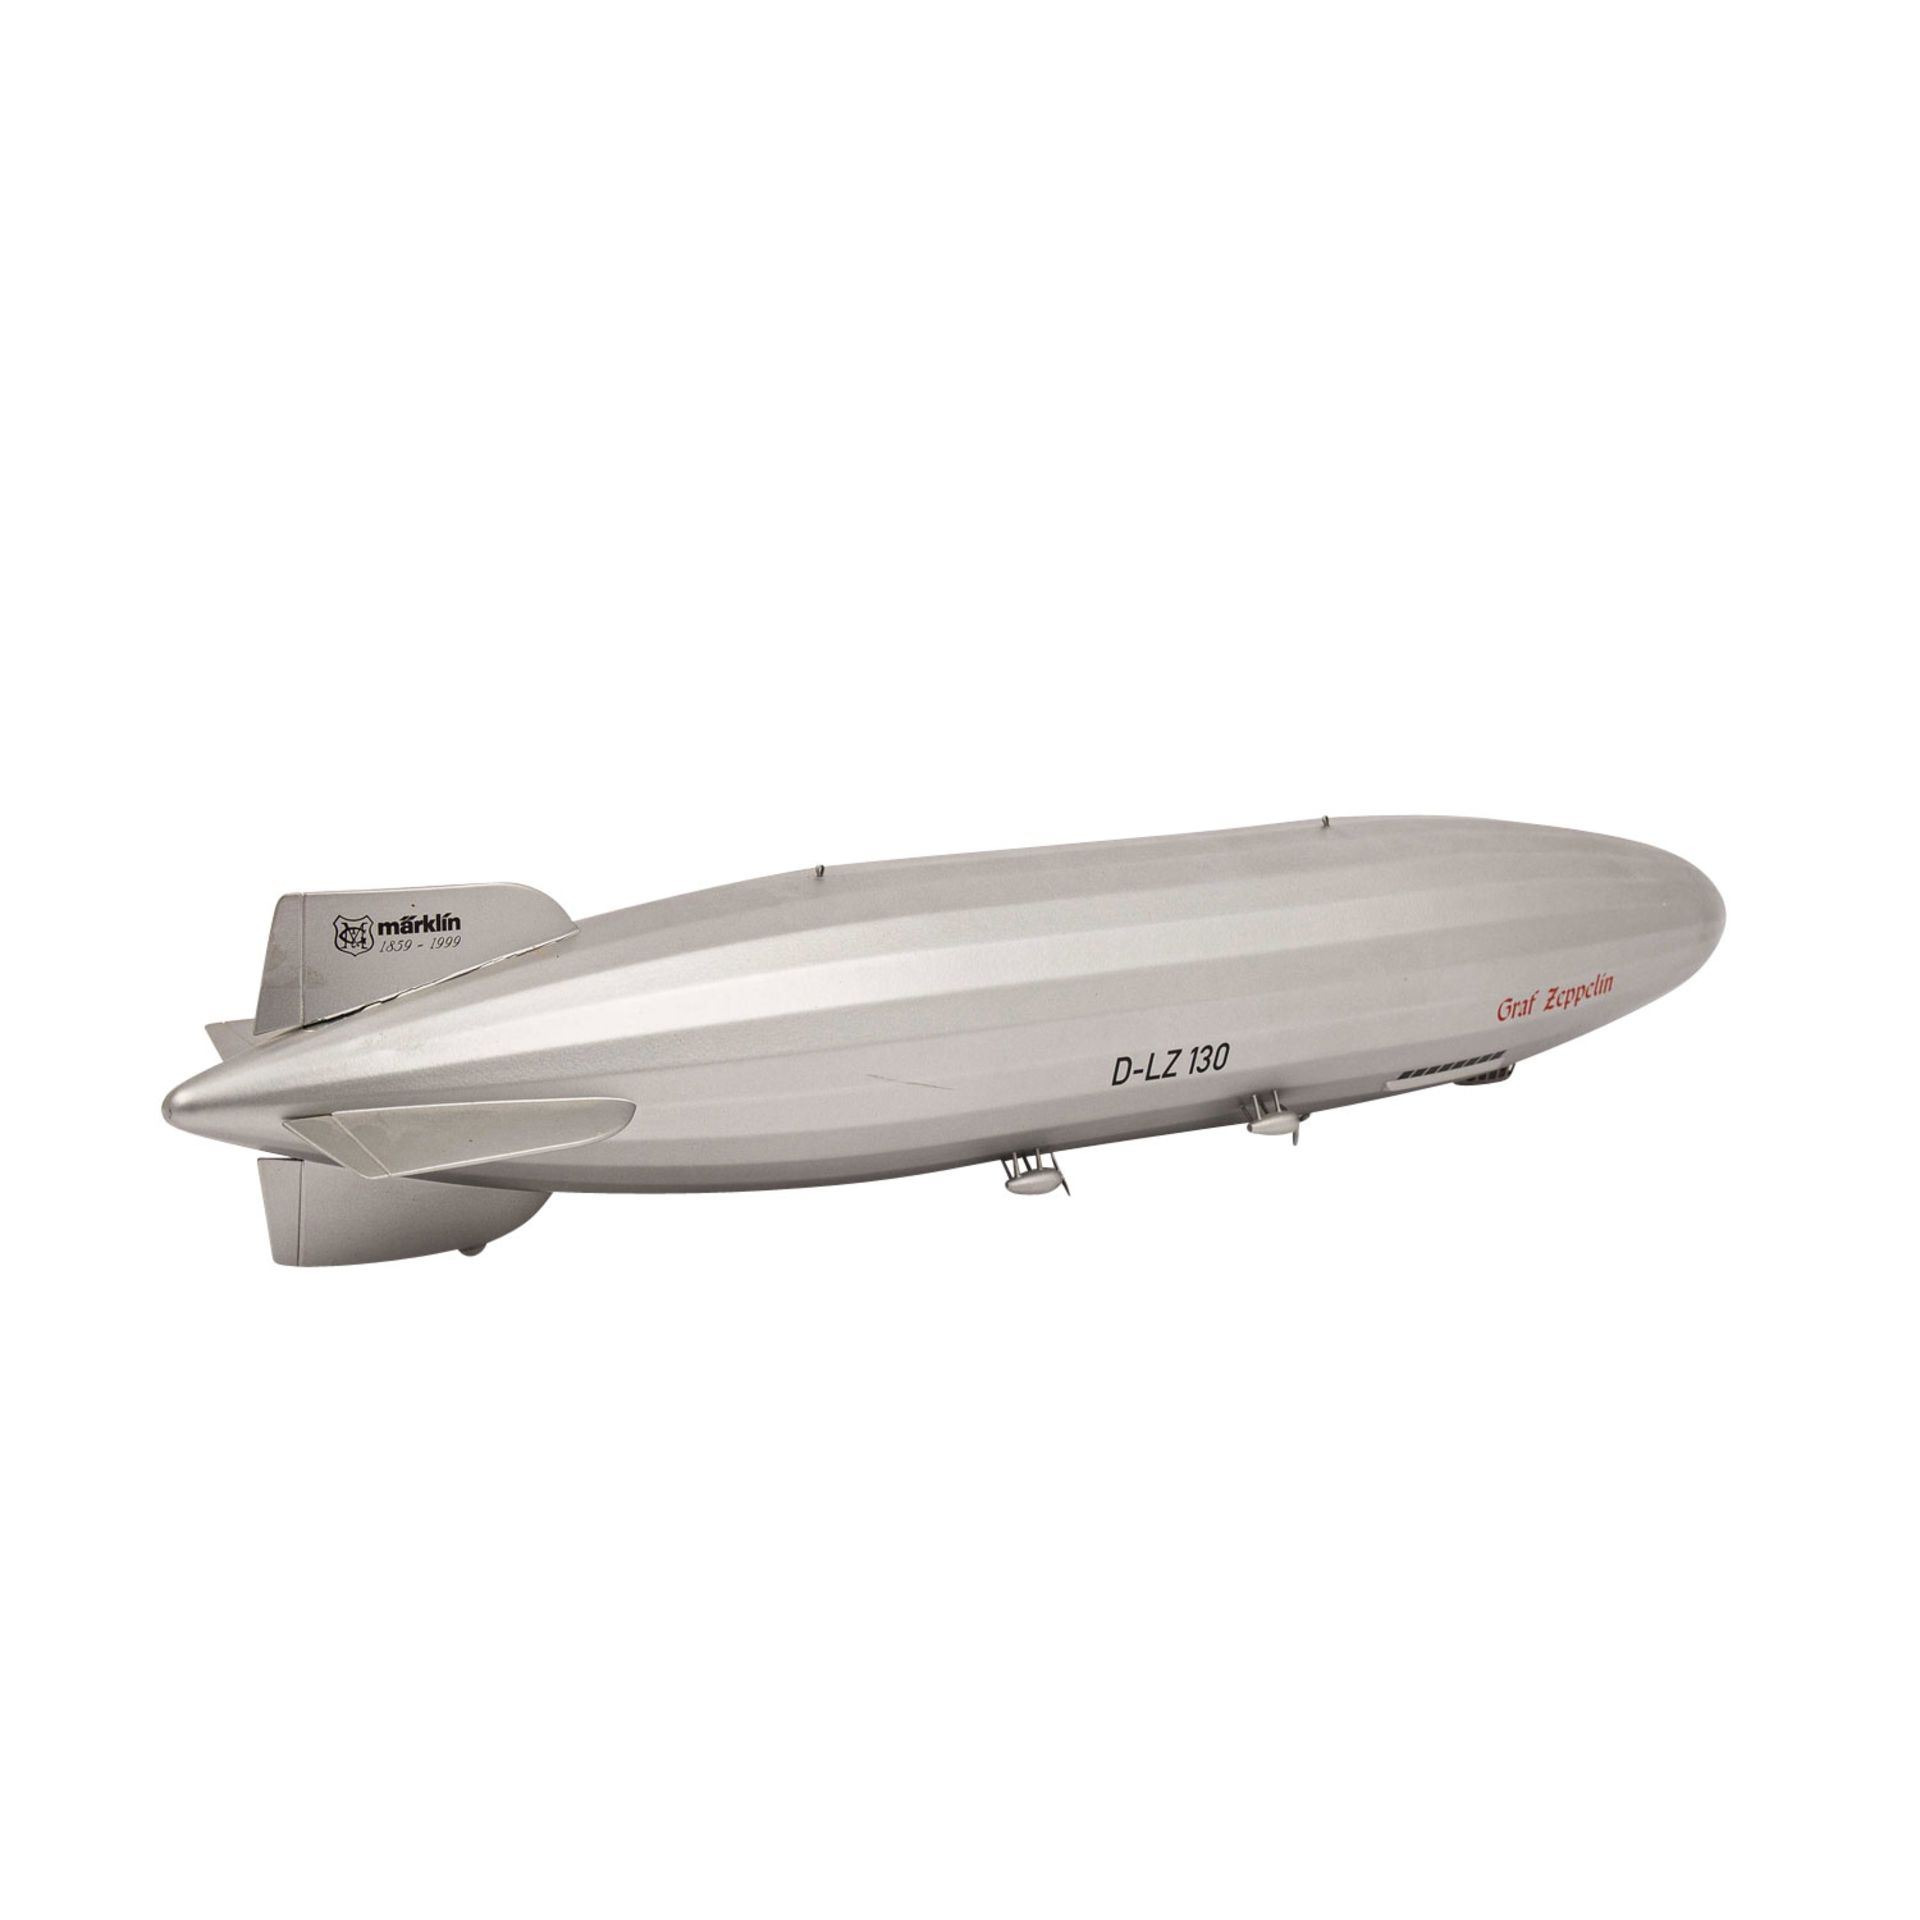 MÄRKLIN Luftschiff "Graf Zeppelin" 11400, einmalige Sonderserie für die MHI von 1999, - Bild 3 aus 3